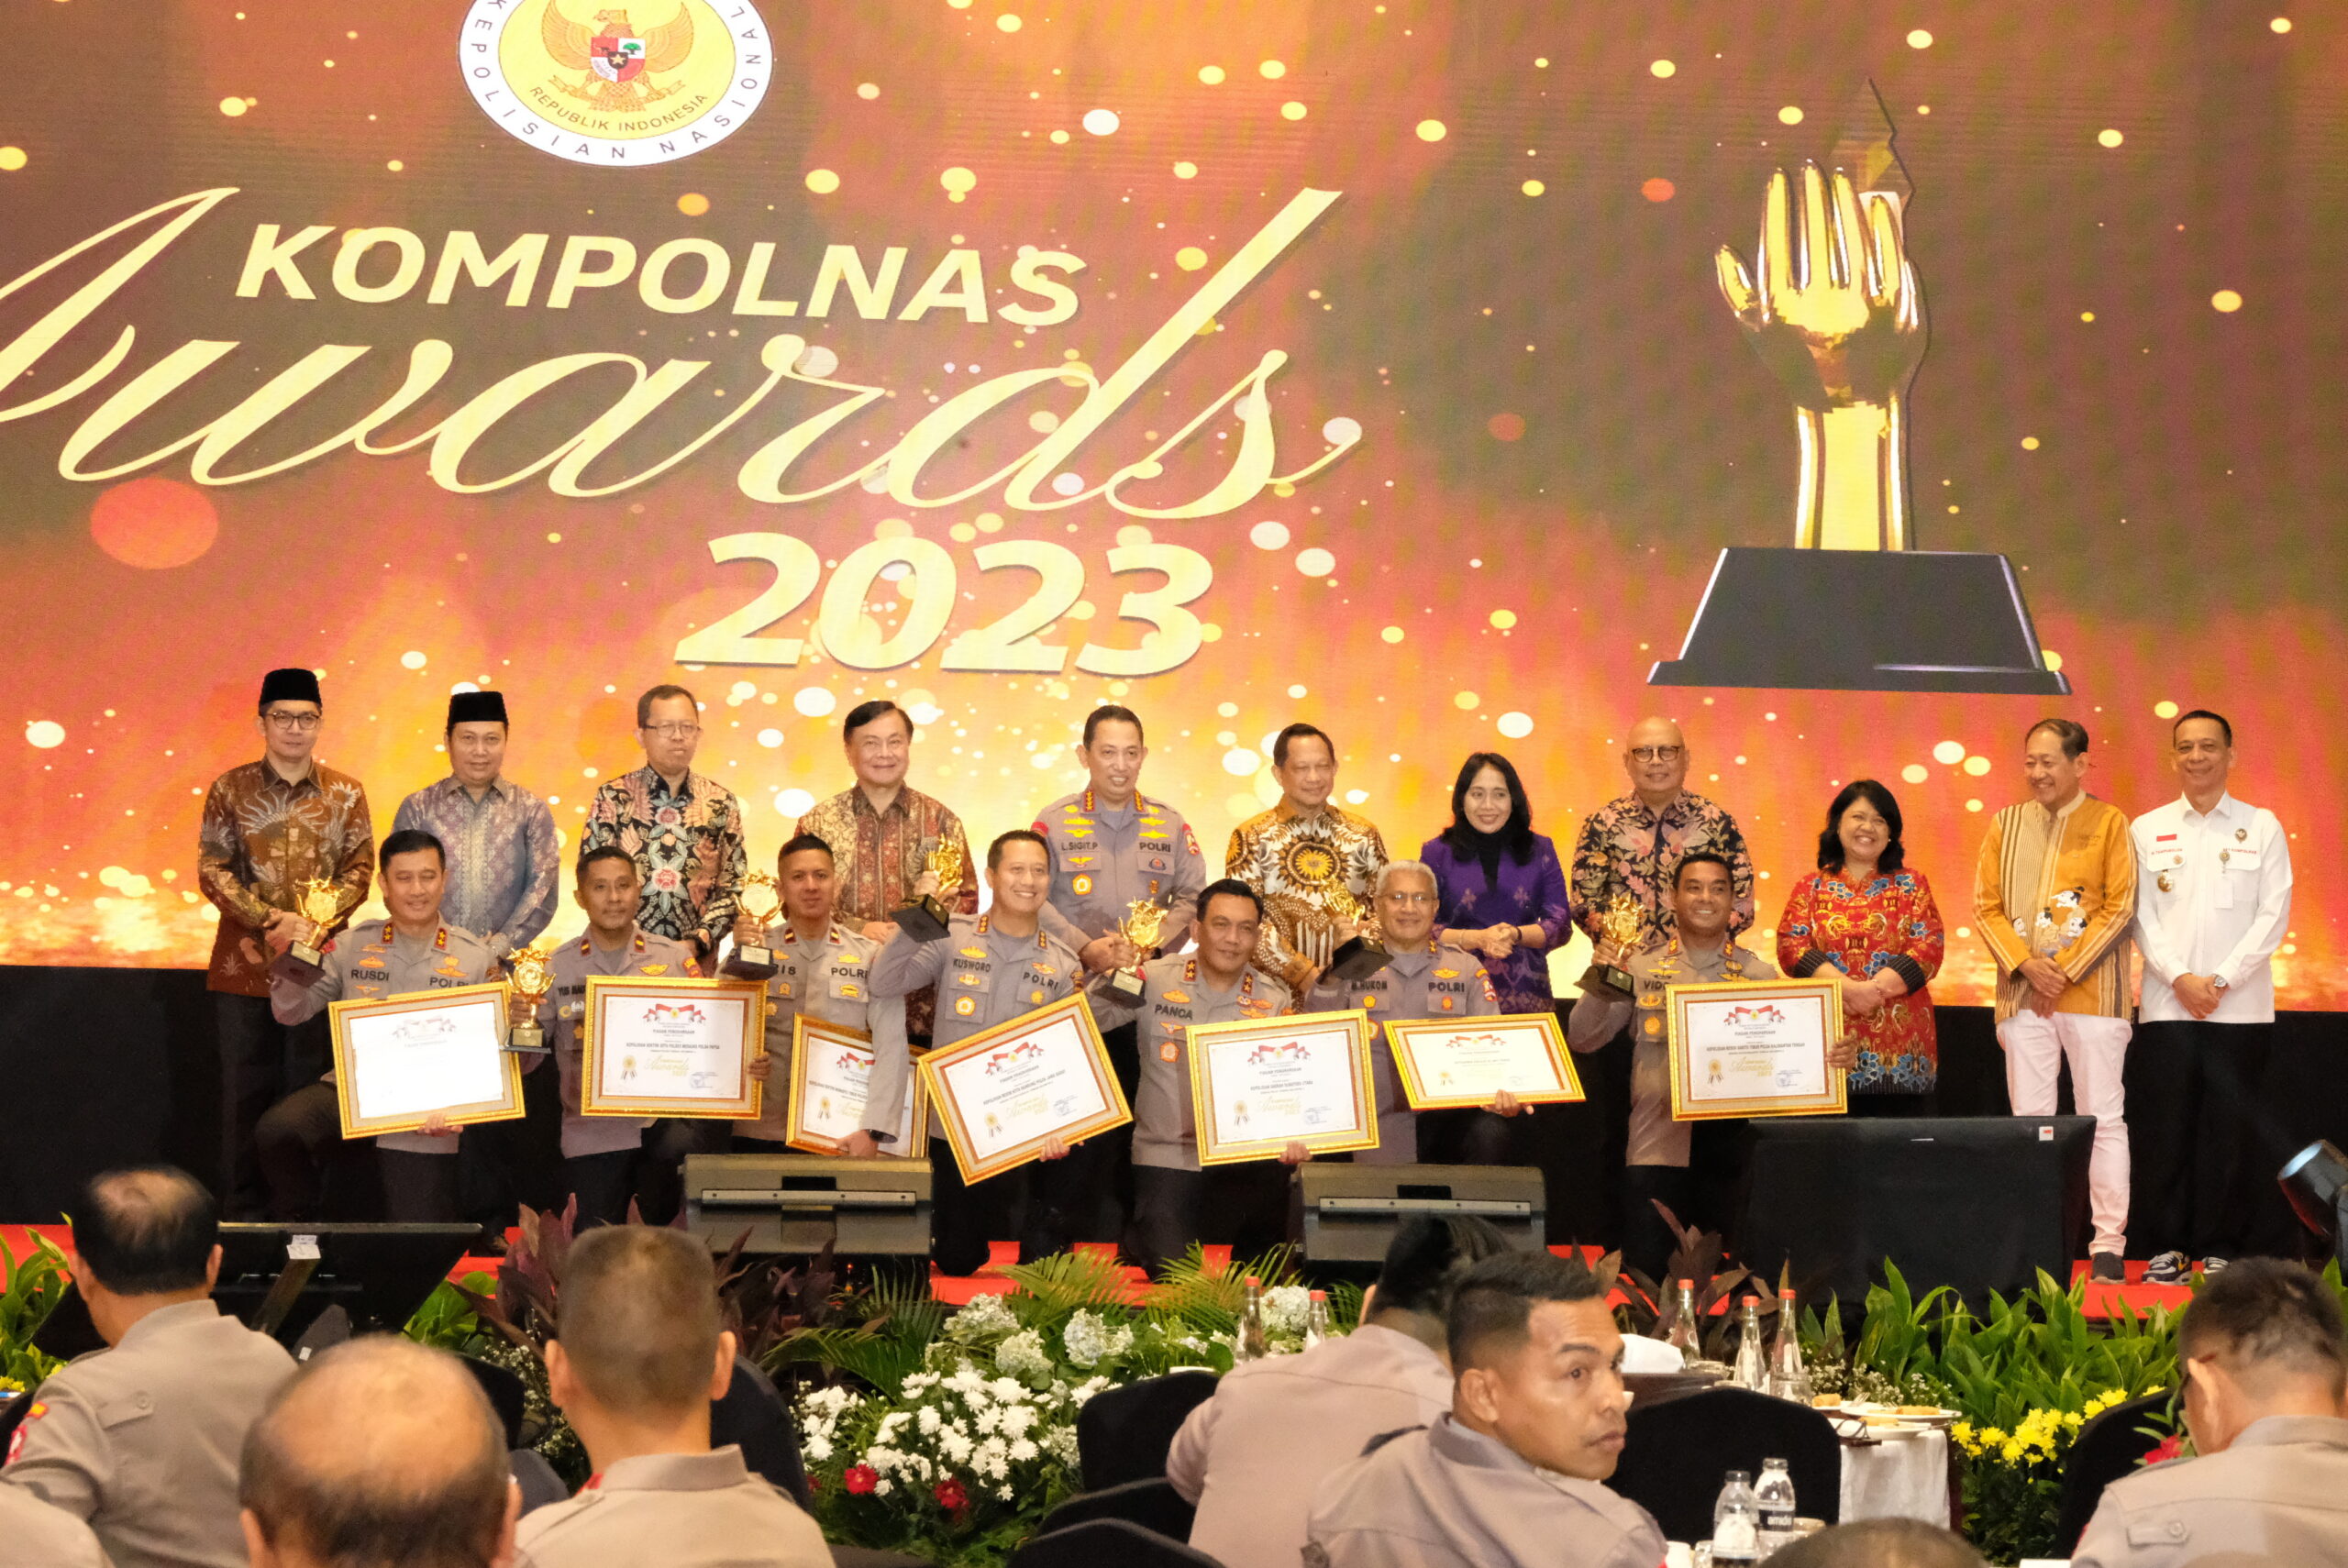 Kompolnas Awards 2023